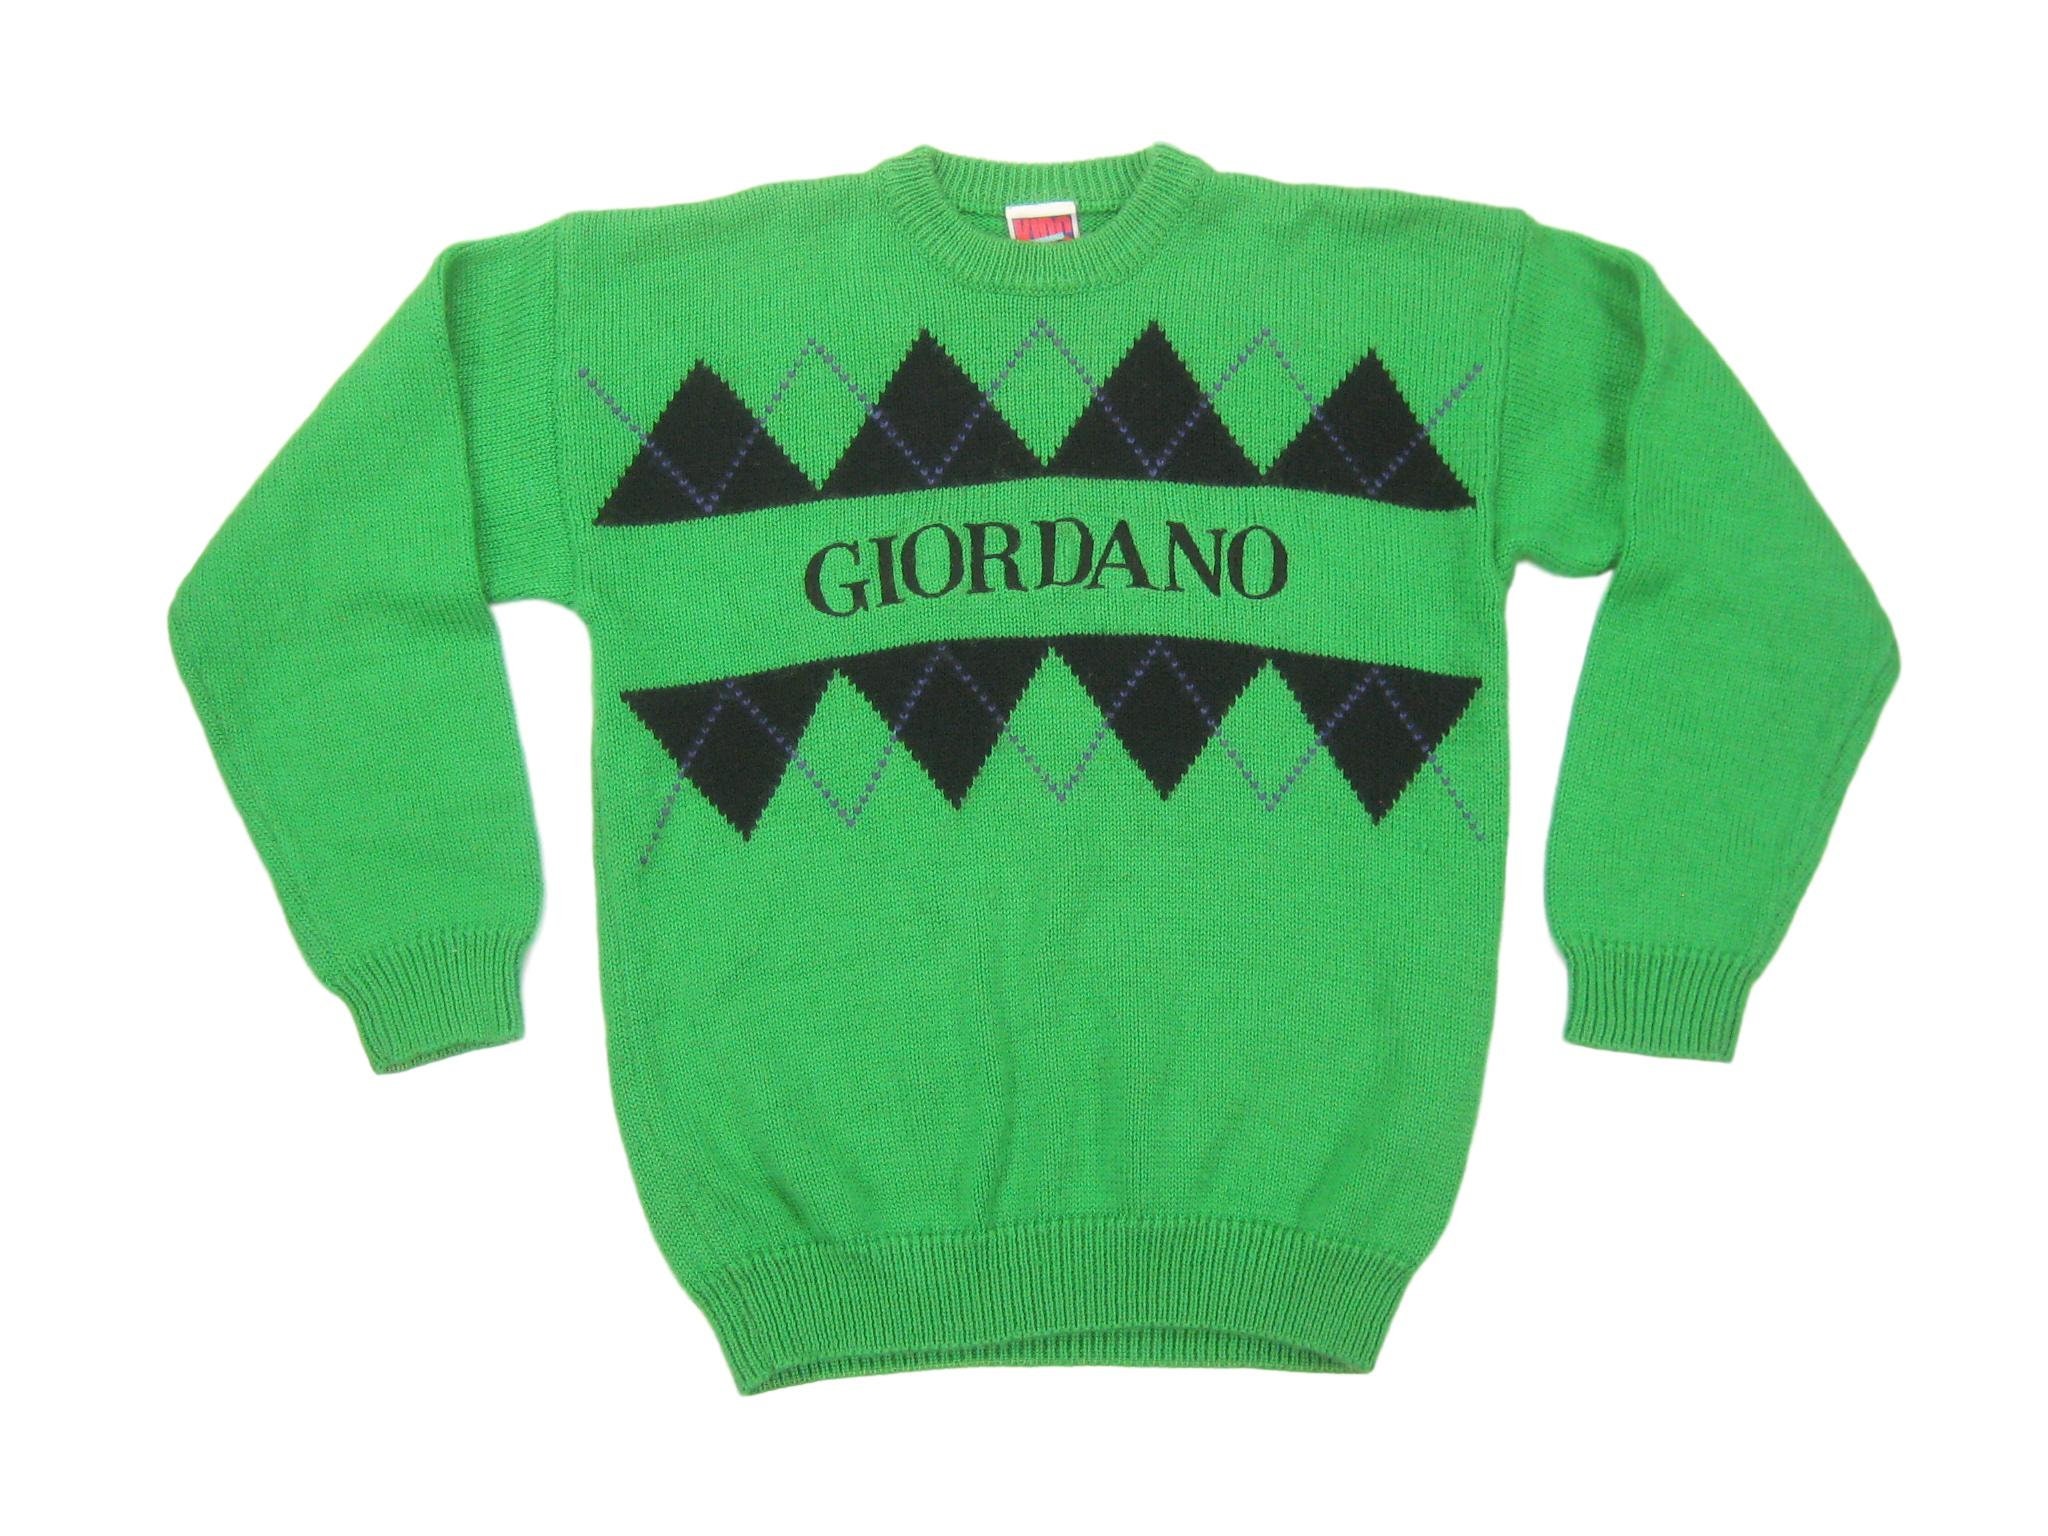 1980s/1990s Giordano Argyle Sweater Vintage Retro Green Kids | Etsy